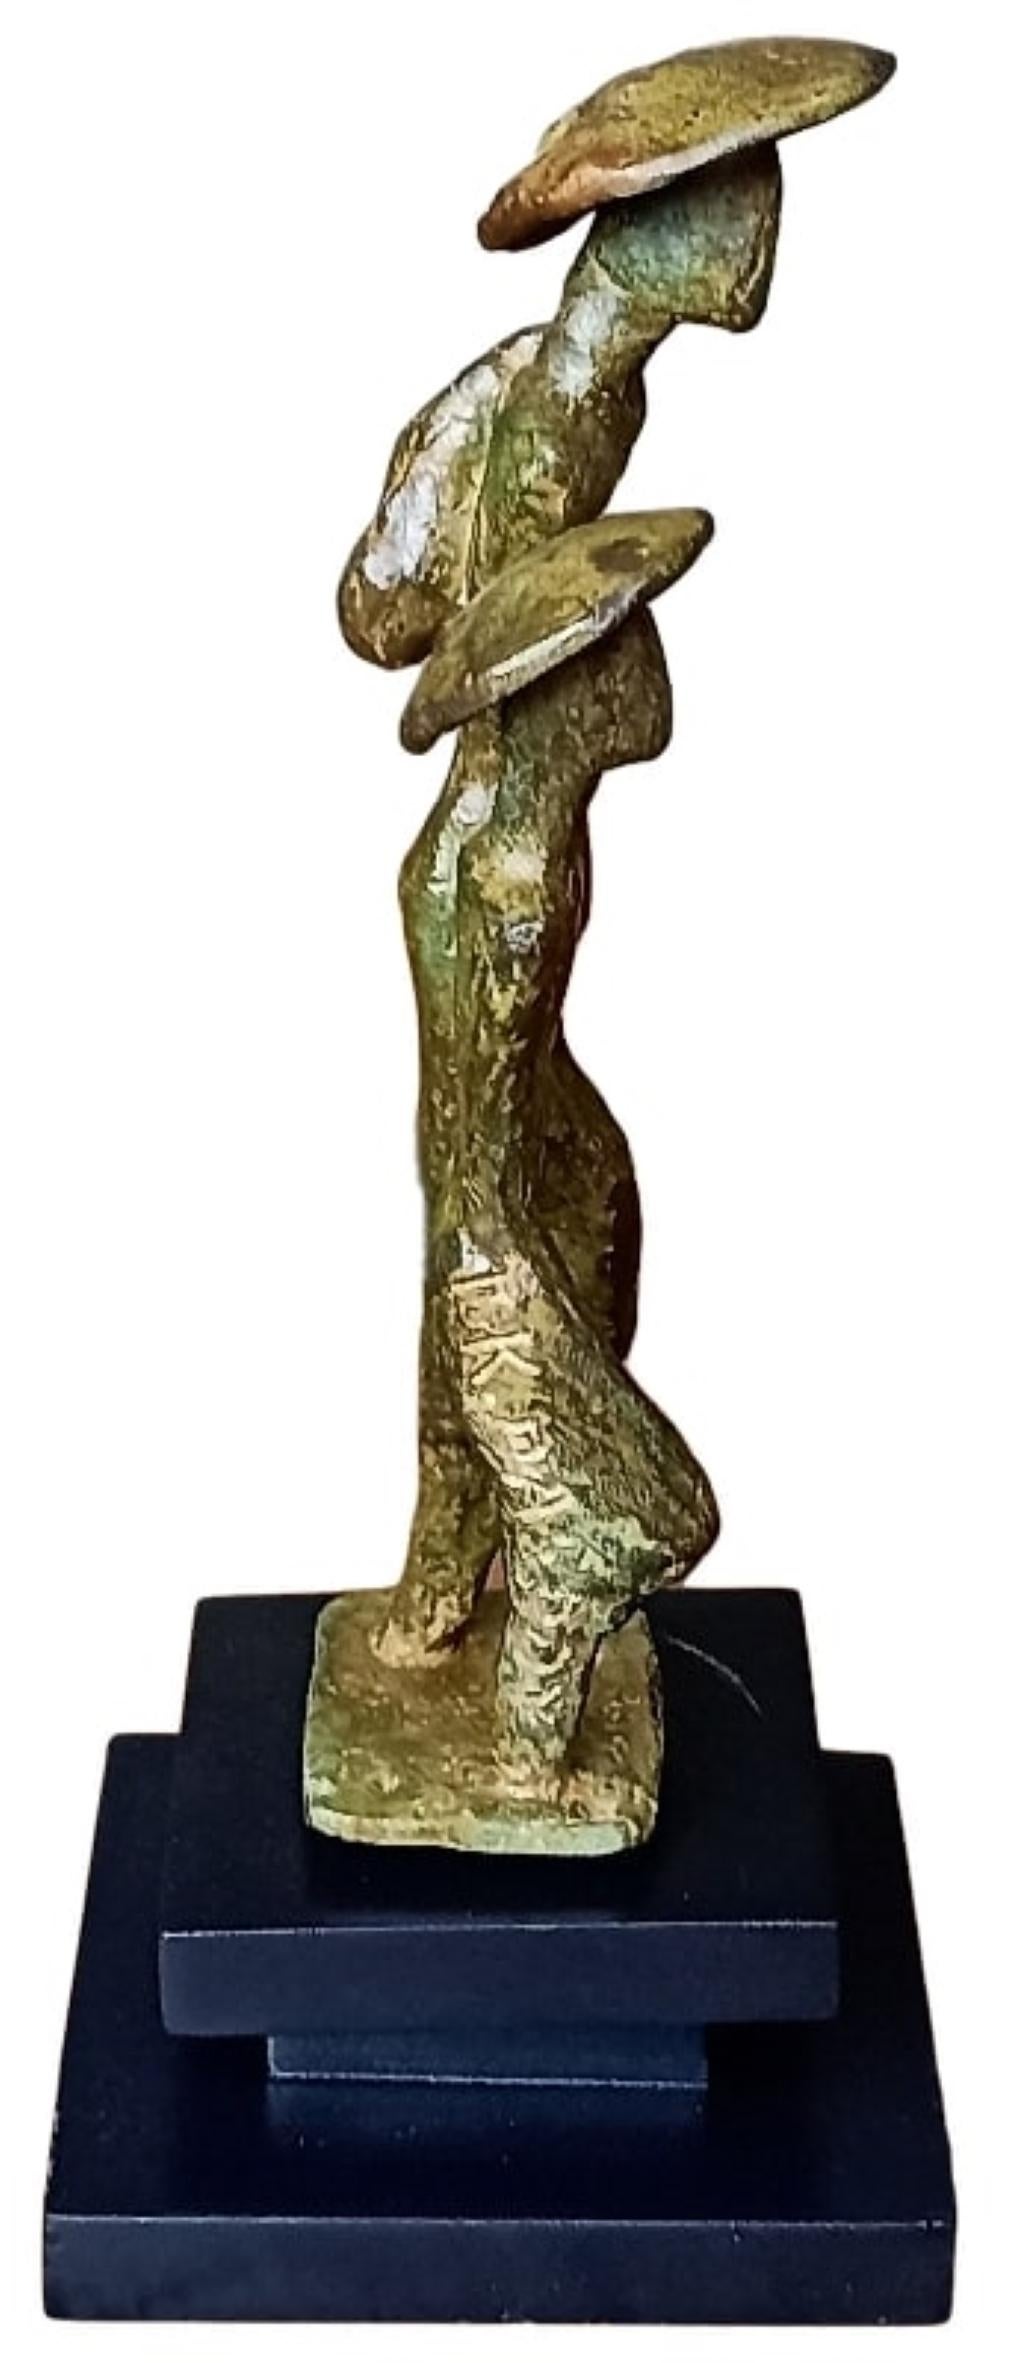 Sans titre, sculpture en bronze, brunâtre figuratif d'un artiste contemporain, en stock - Or Abstract Sculpture par Tushar Kanti Das Roy